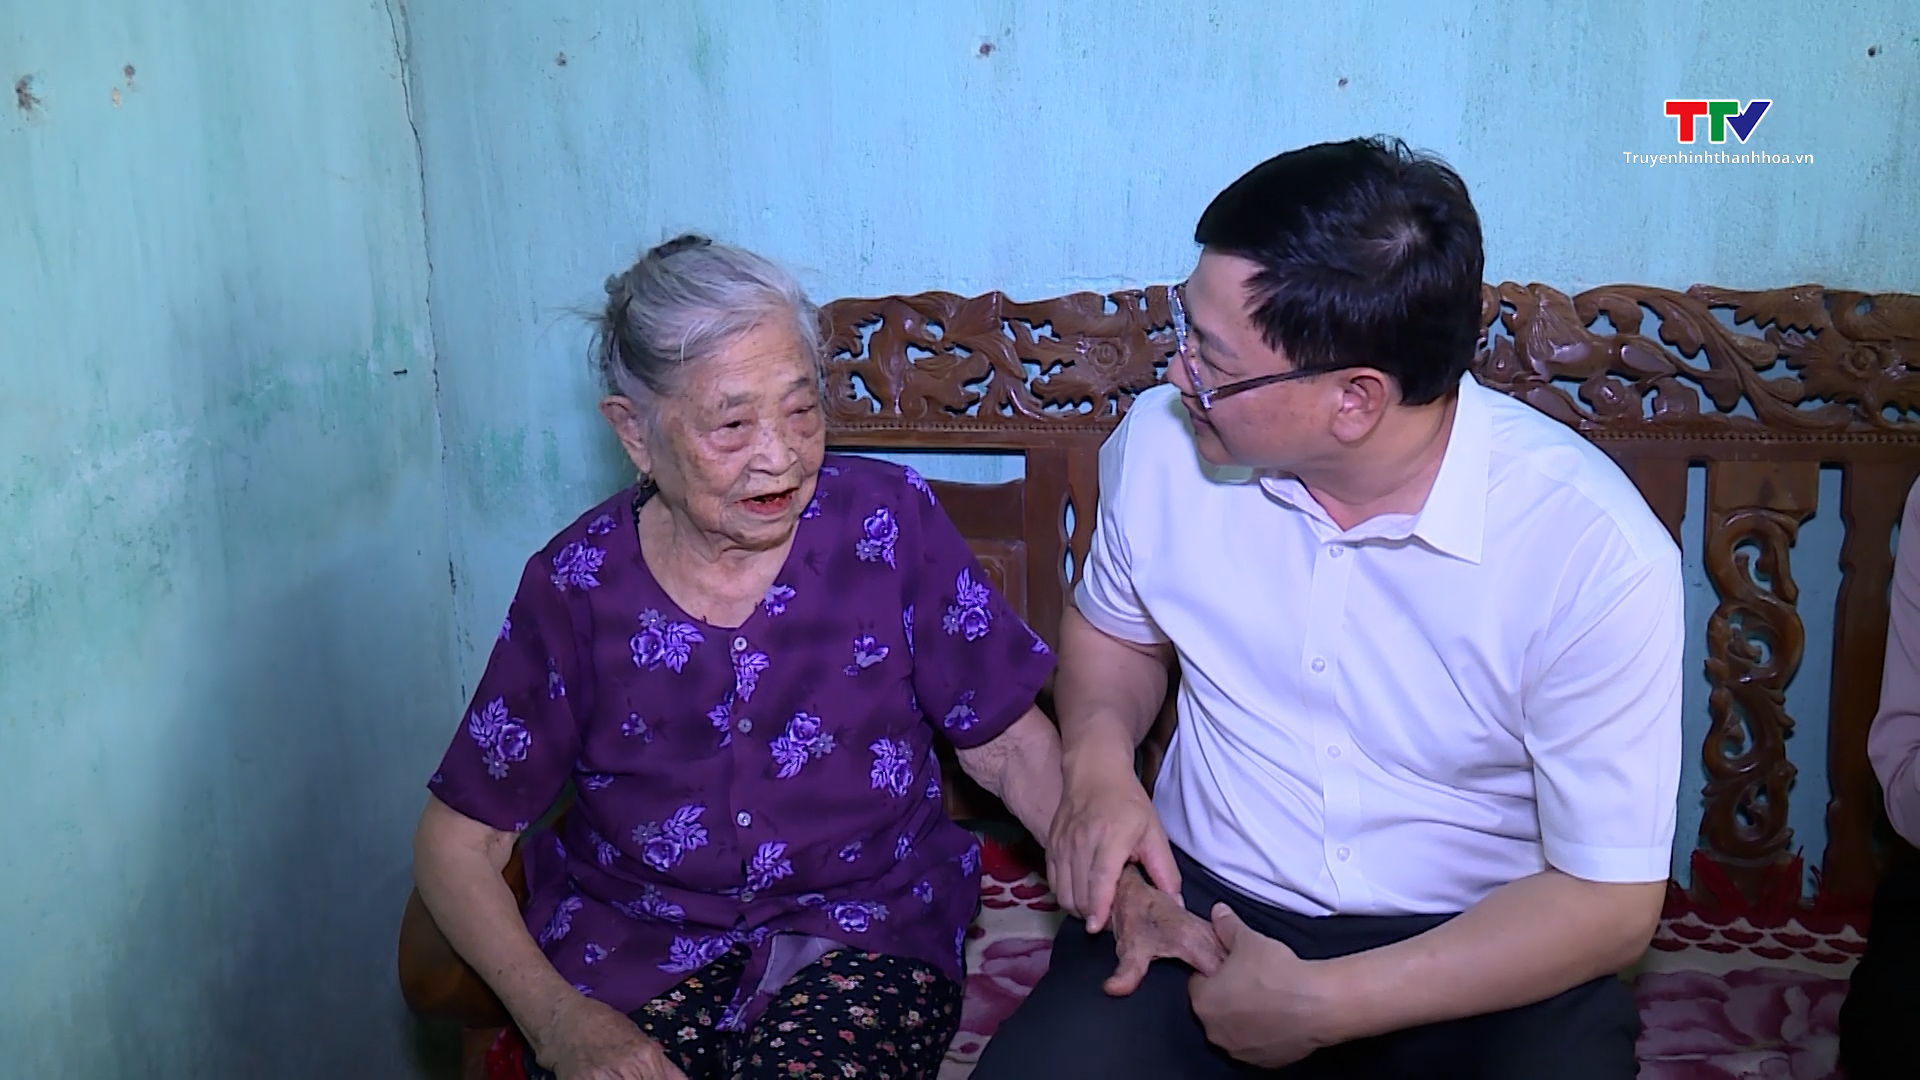 Phó Chủ tịch Uỷ ban Nhân dân tỉnh Mai Xuân Liêm thăm, tặng quà cựu chiến sỹ Điện Biên- Ảnh 3.